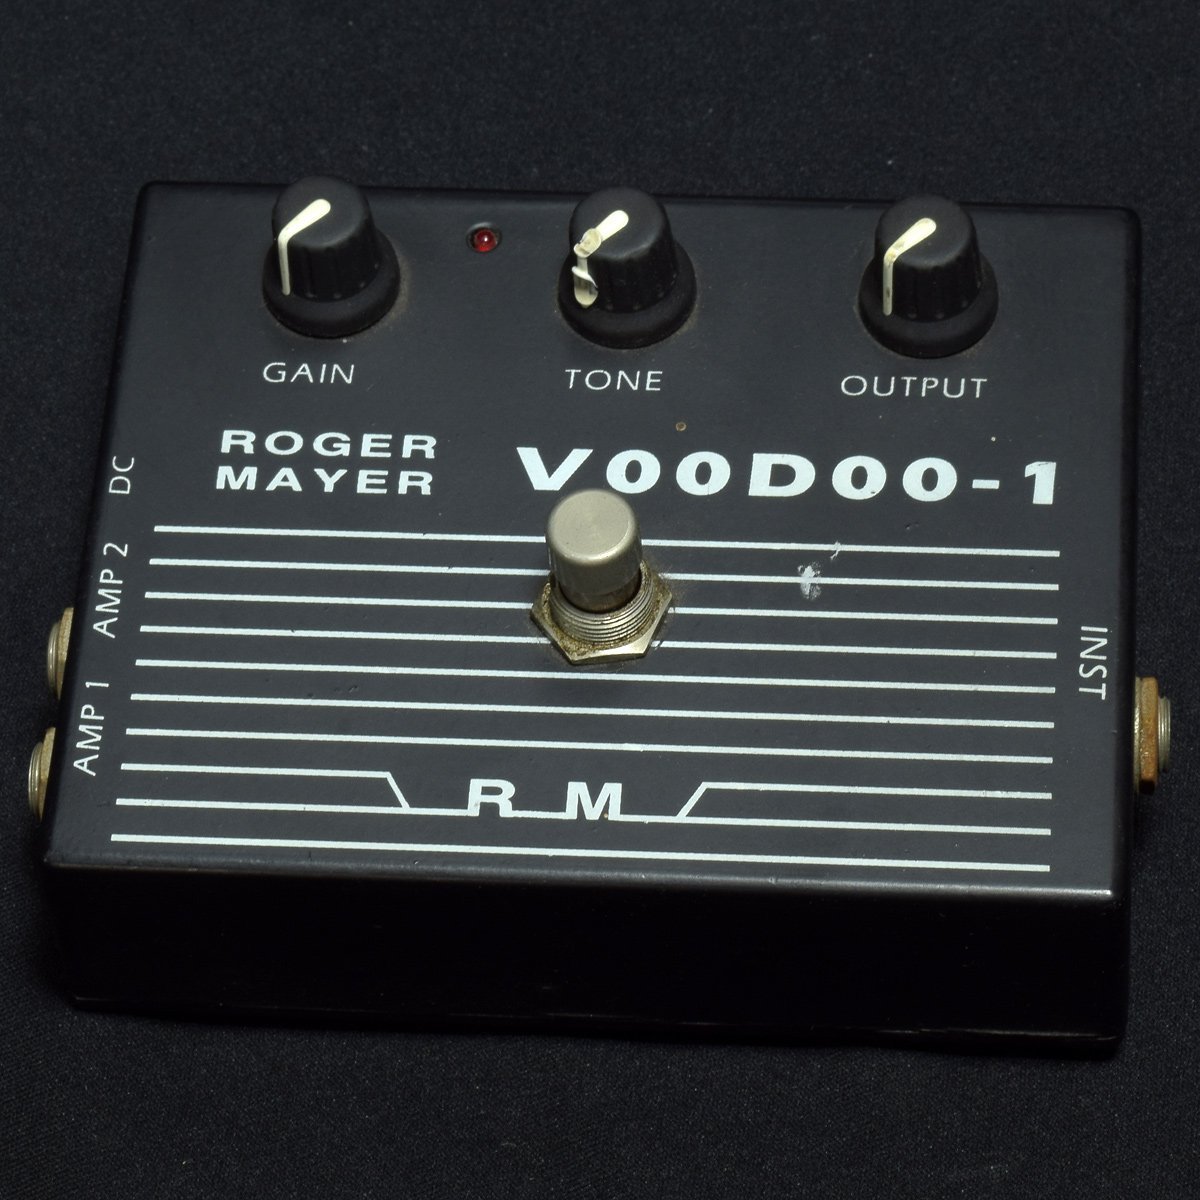 Roger mayer Voodoo-1